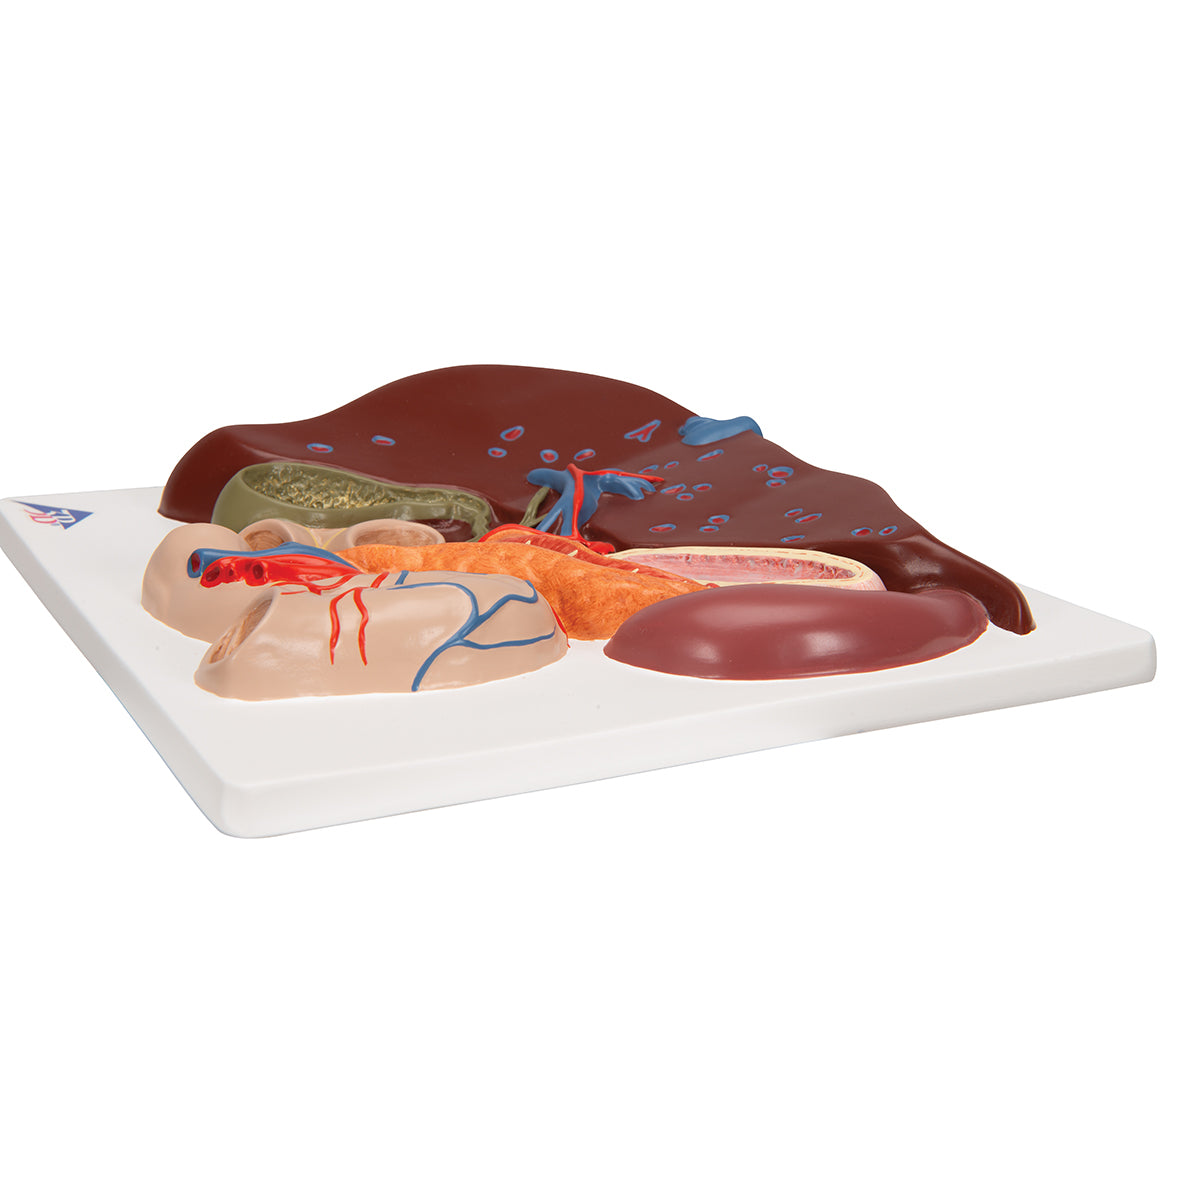 Modell av levern, gallblåsan, gallgångarna och relaterade organ